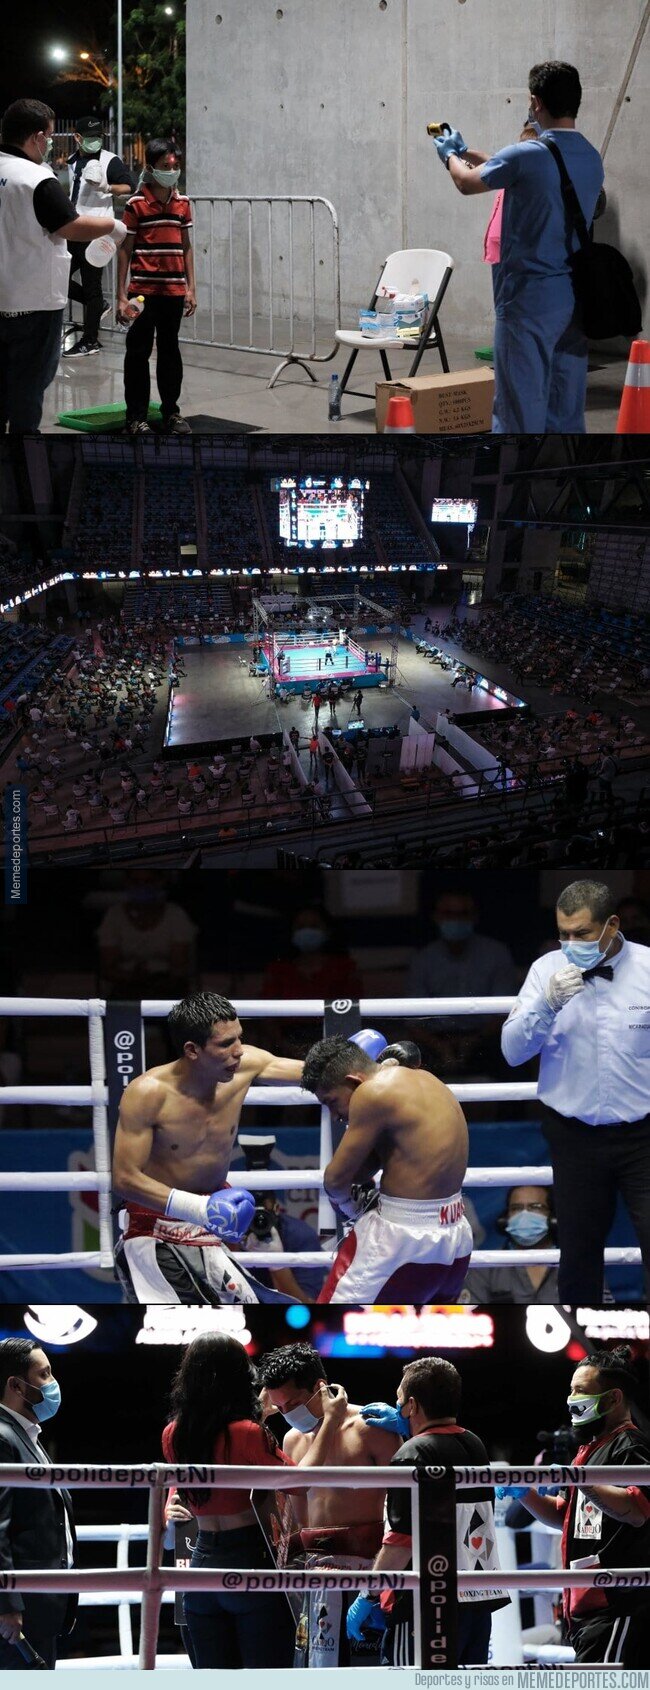 1103309 - El increíble desafío en Nicaragua al Covid con tal de tener una noche de Boxeo